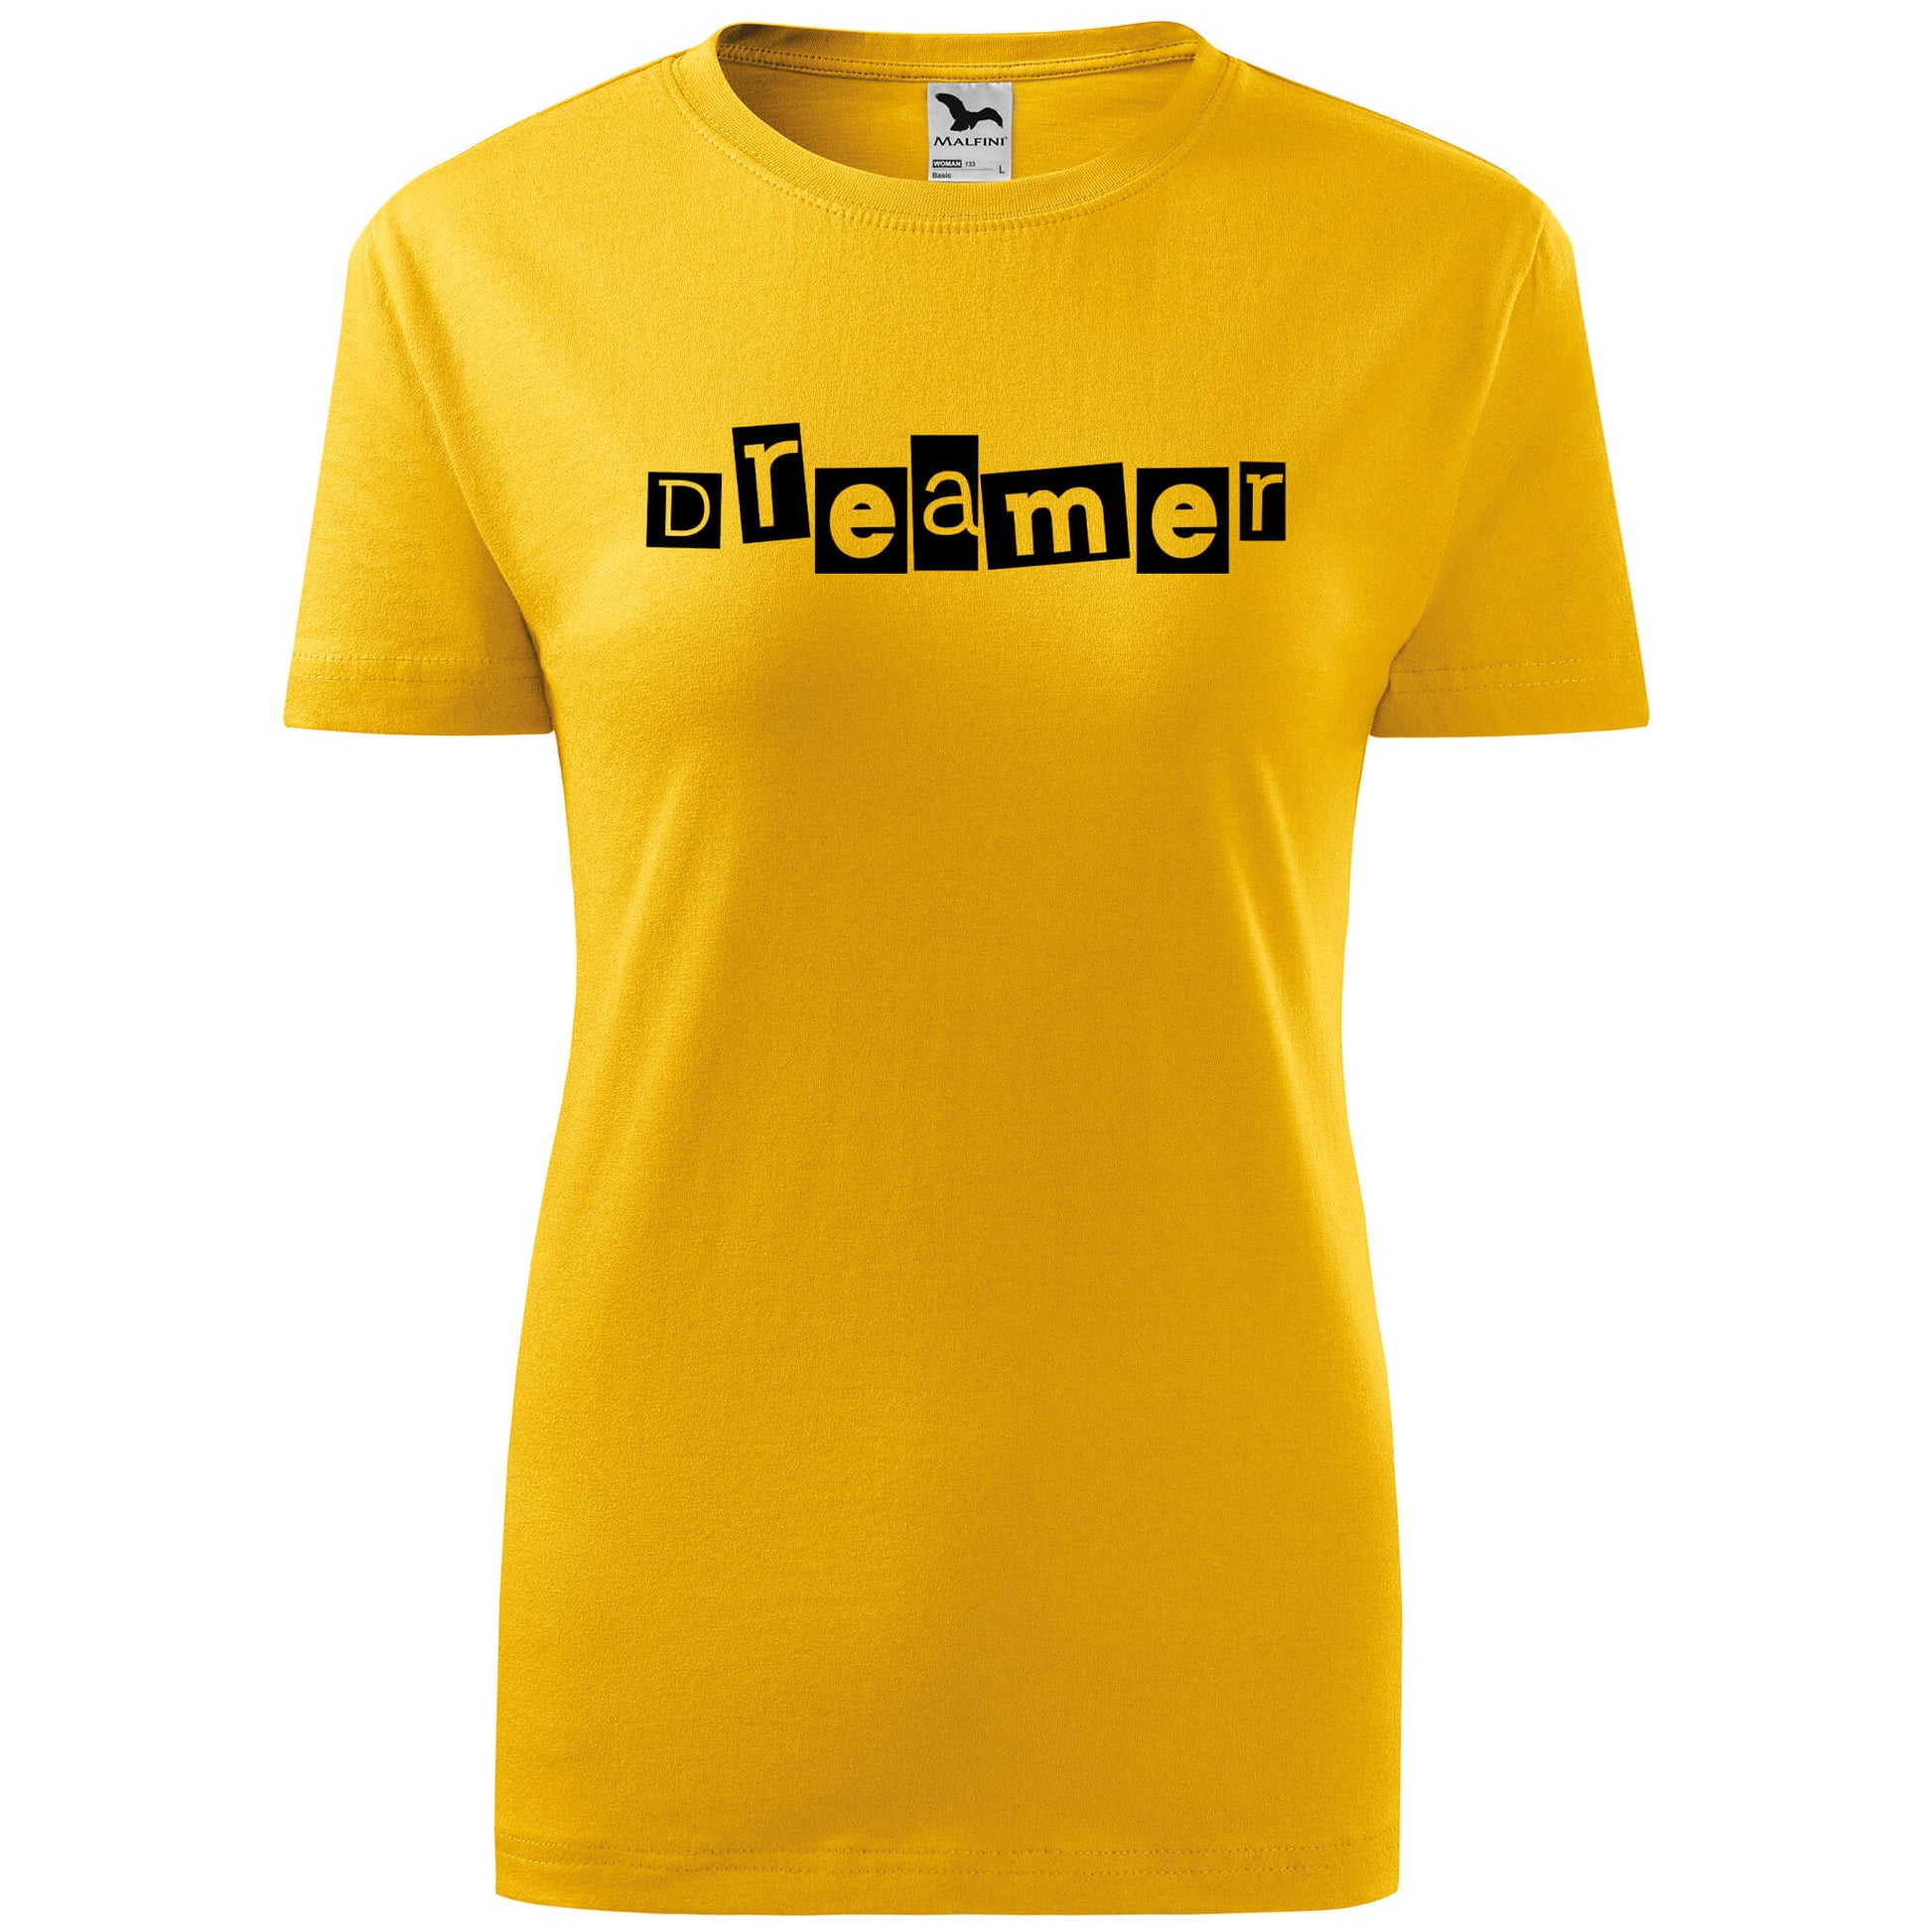 T-shirt - dreamer - rvdesignprint